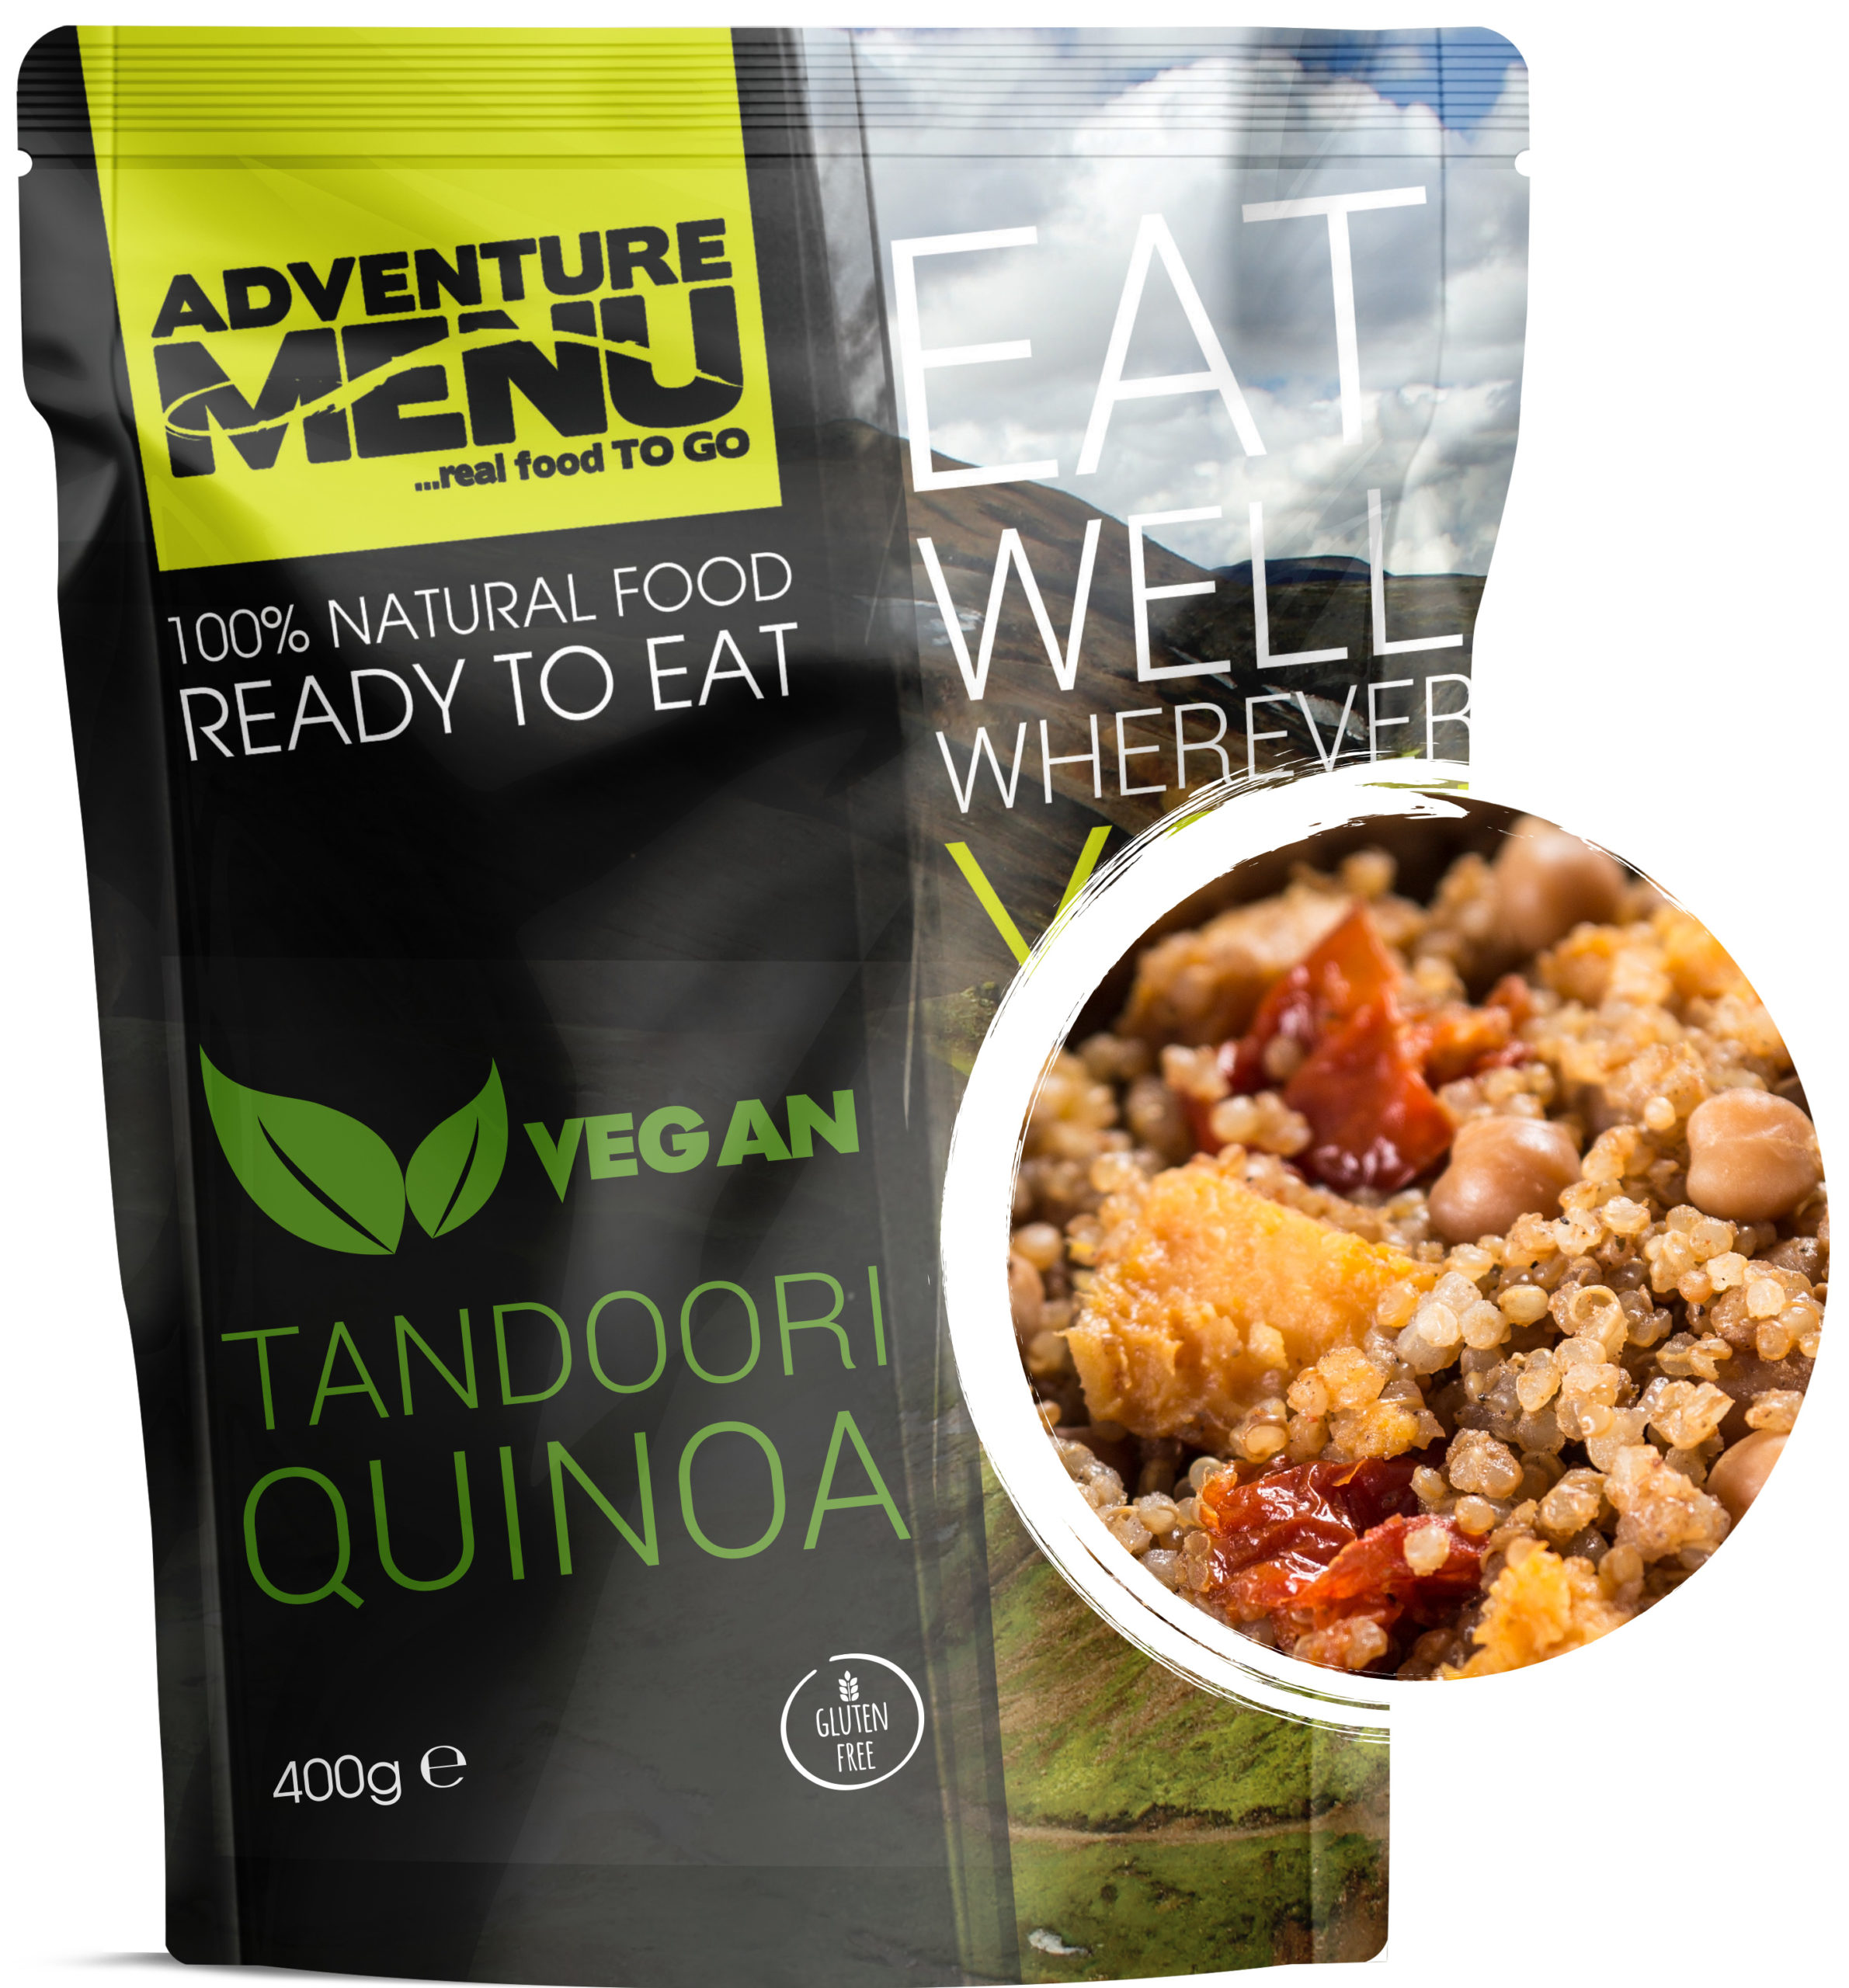 Adventure menu Tandoori quinoa – vegan 400g